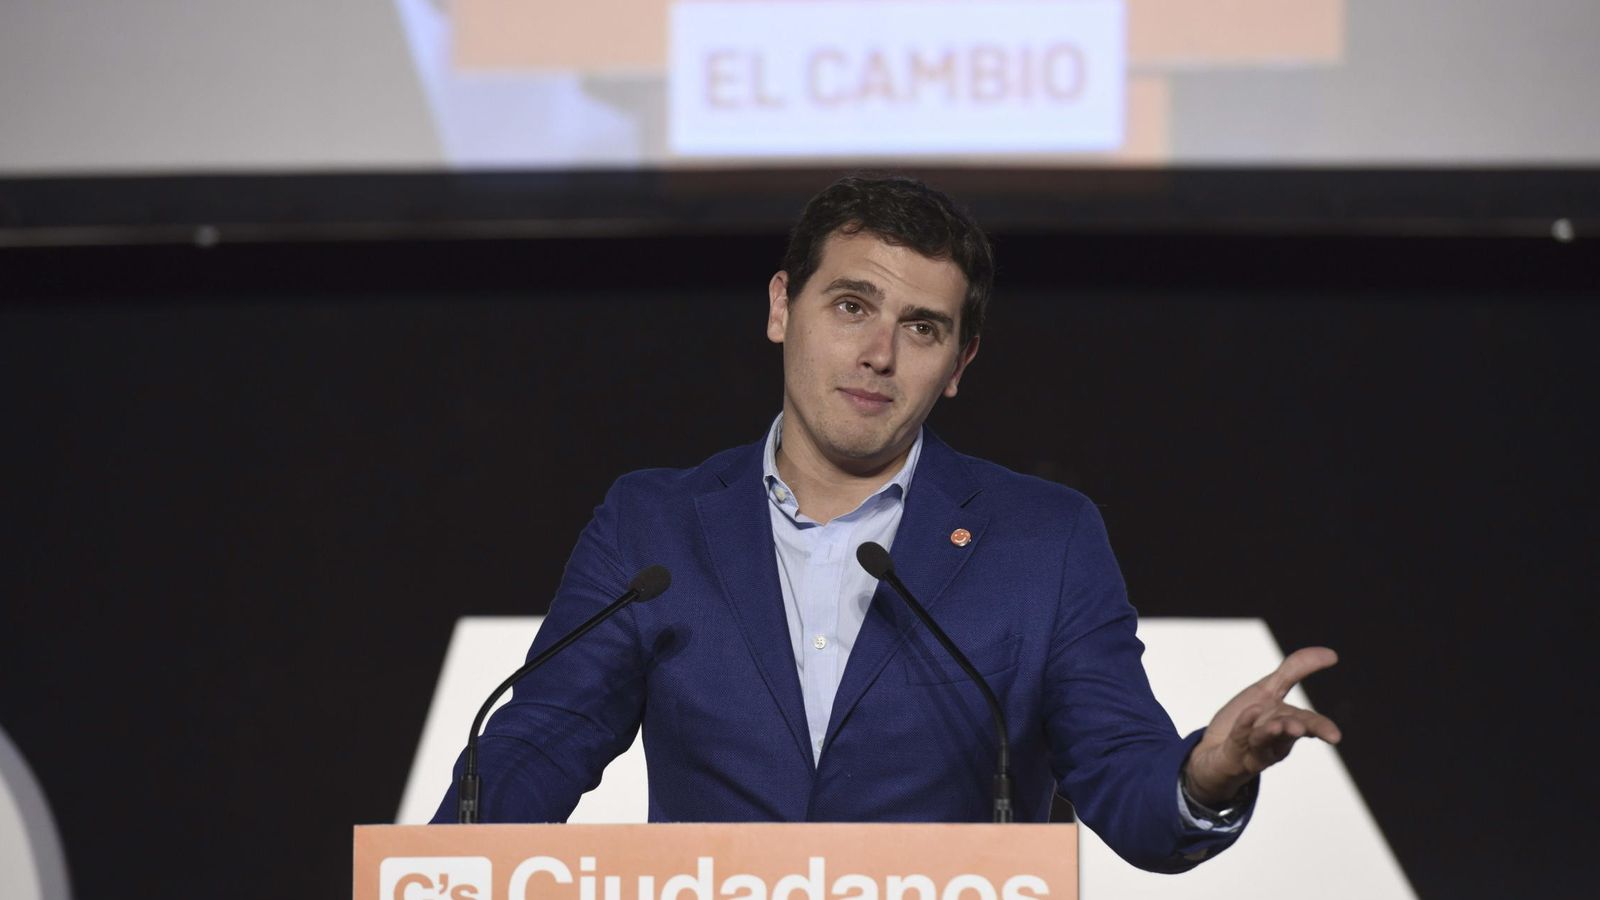 Foto: El presidente de Ciudadanos, Albert Rivera, durante su intervención en un mitin de campaña en Alcalá de Henares. (Efe)